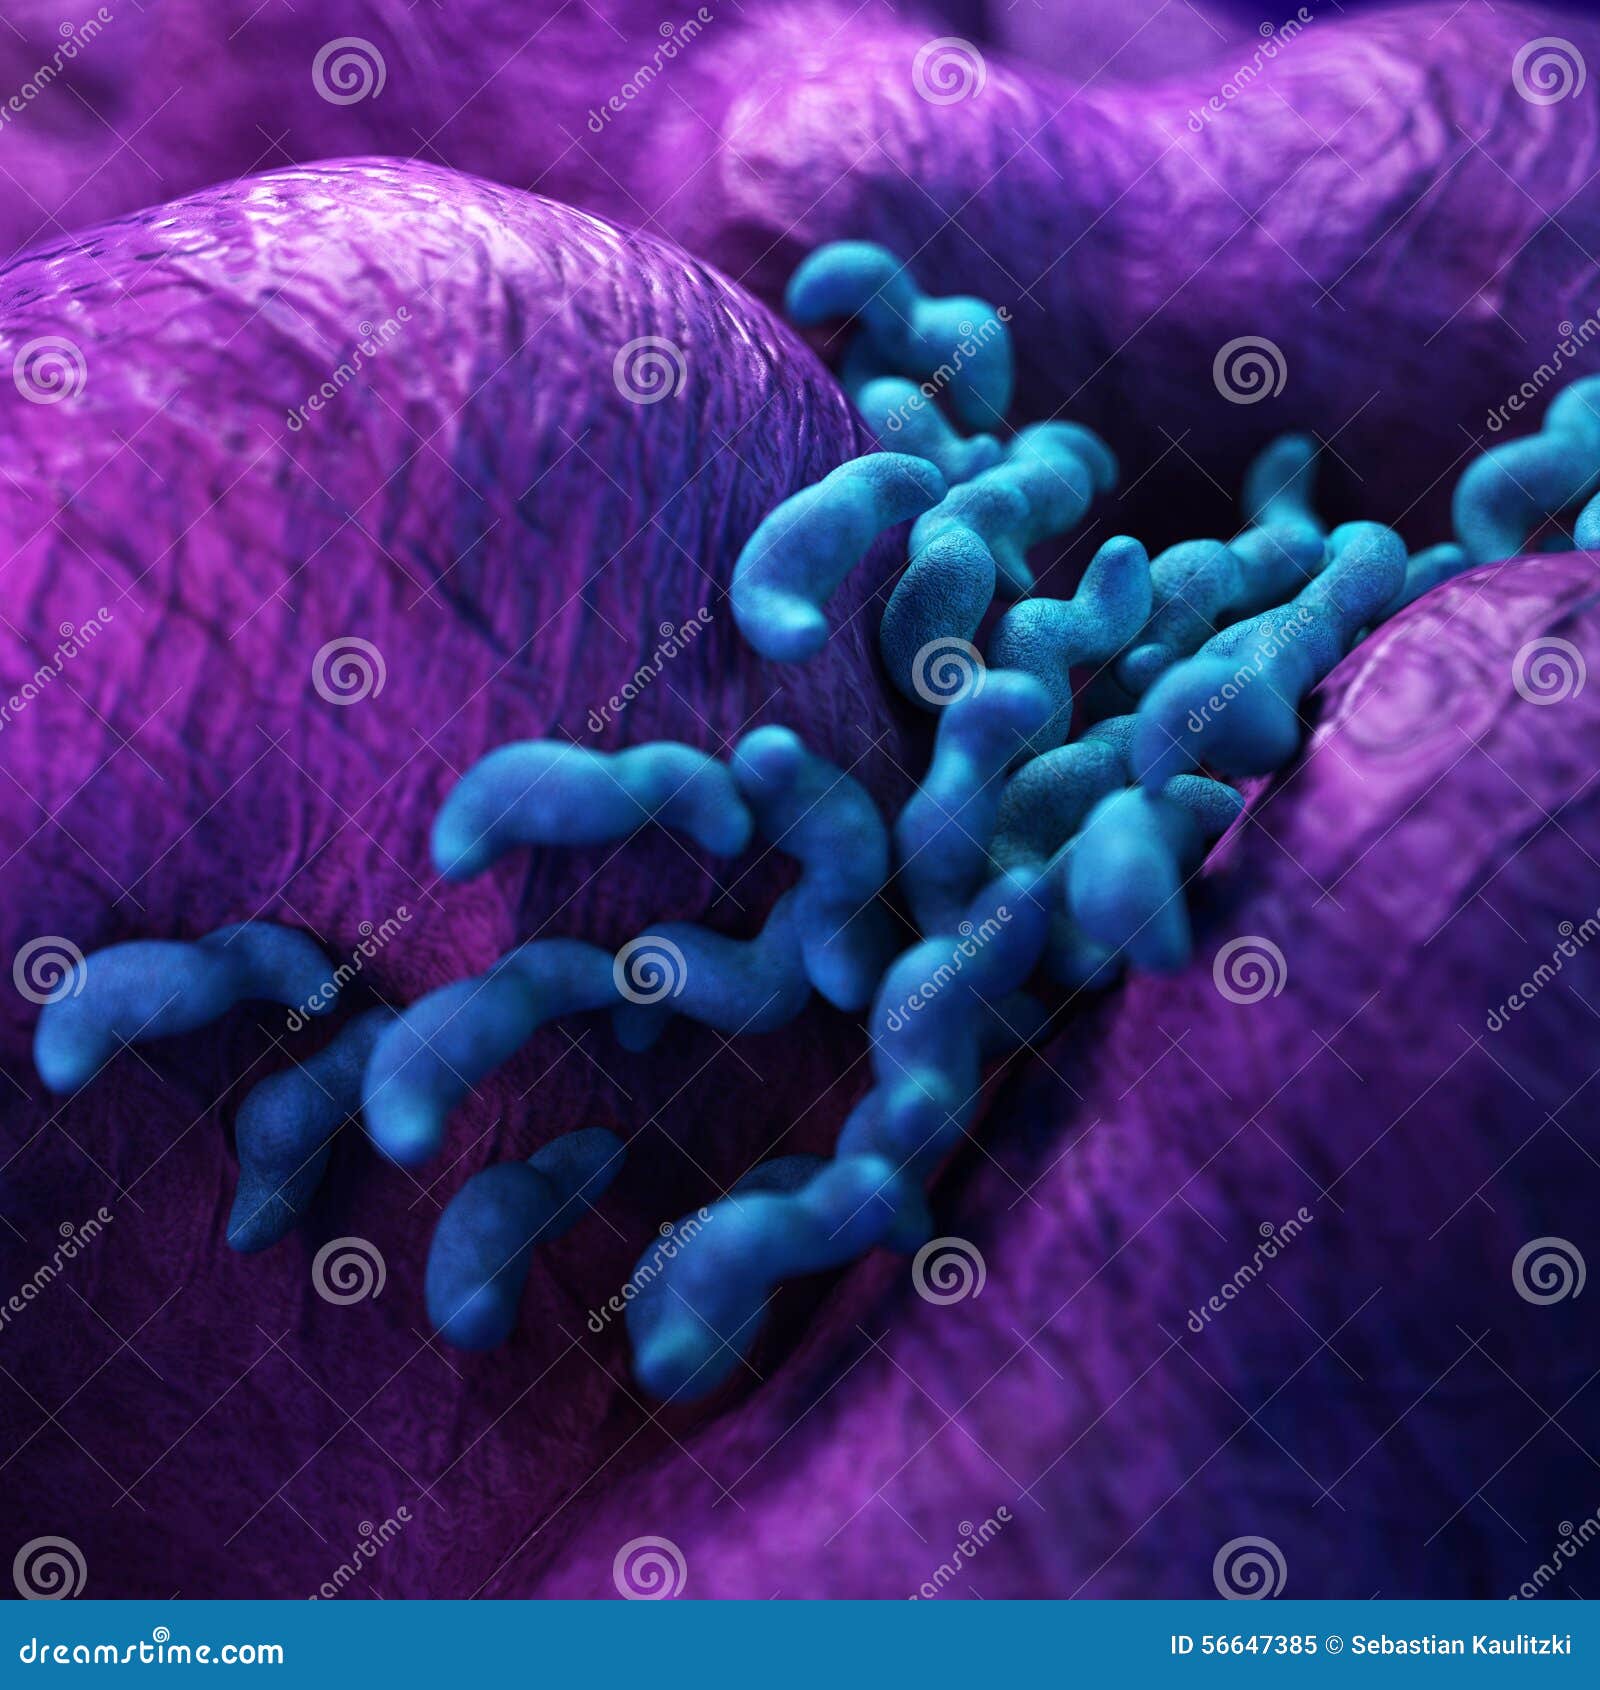 the campylobacter - close up